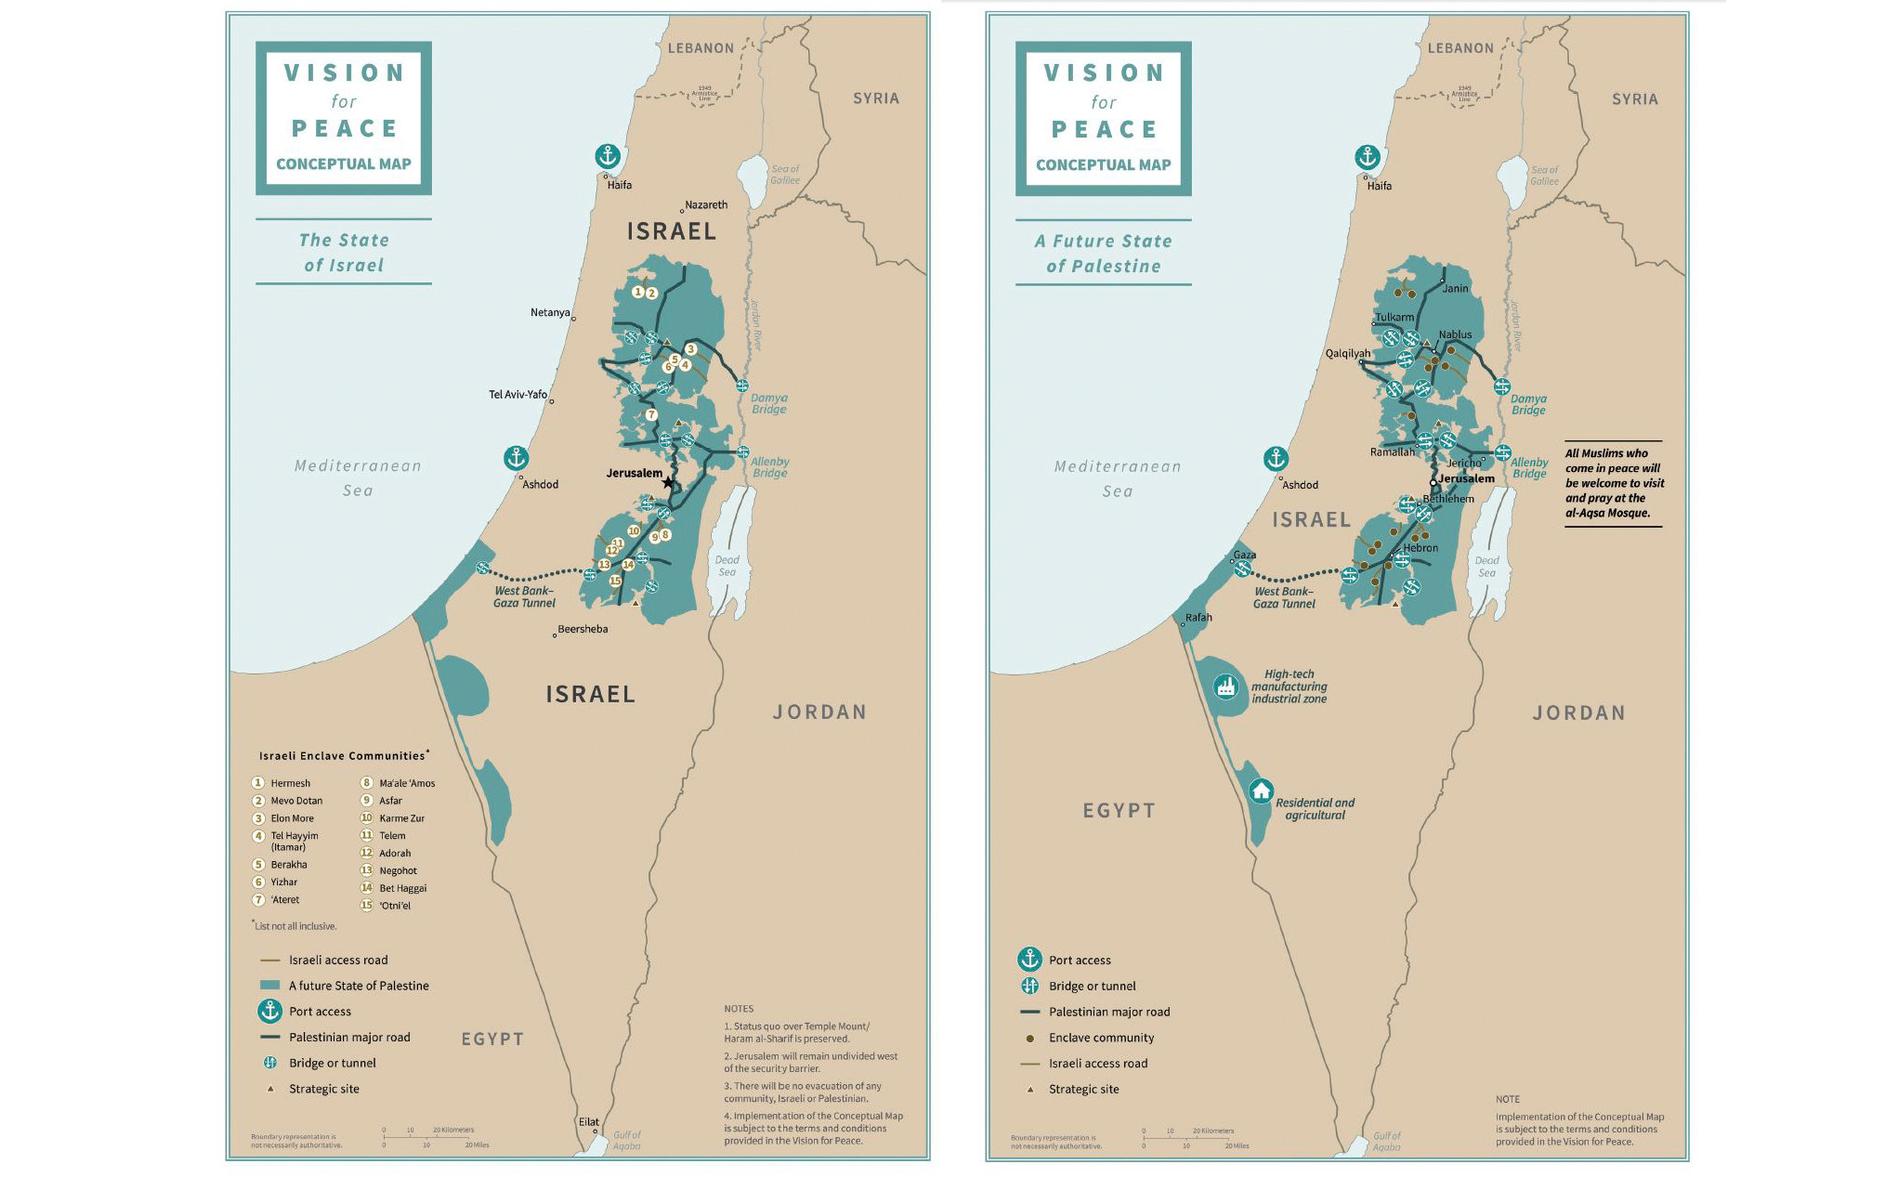 Föreslagna gränsdragningar mellan Israel och ett självständigt Palestina. Områden på den ockuperade Västbanken, inklusive befintliga bosättningar, föreslås ingå i Israel.